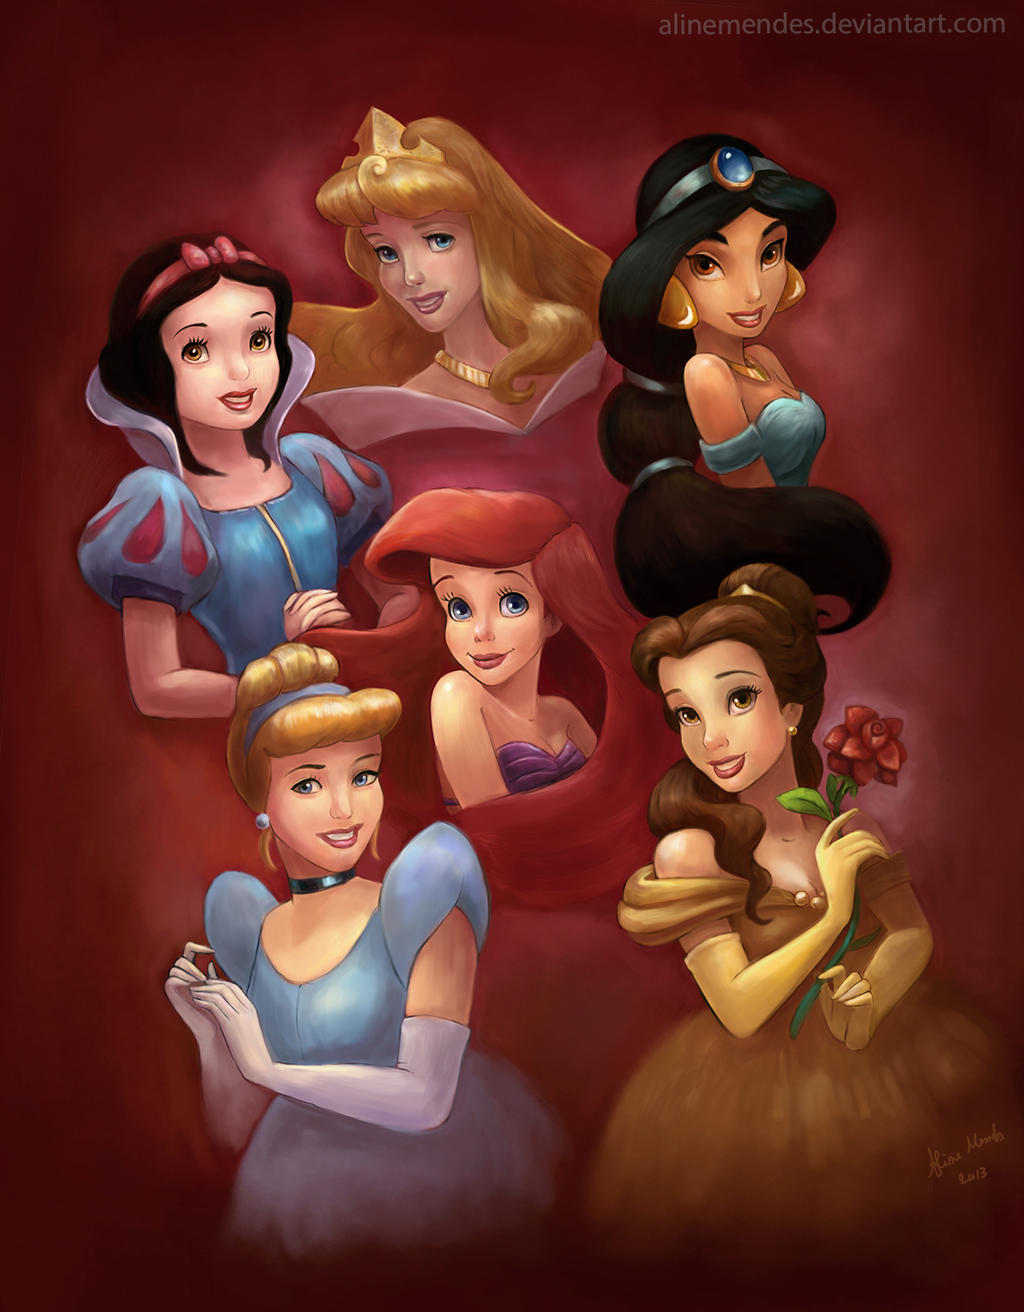 More Disney Princess